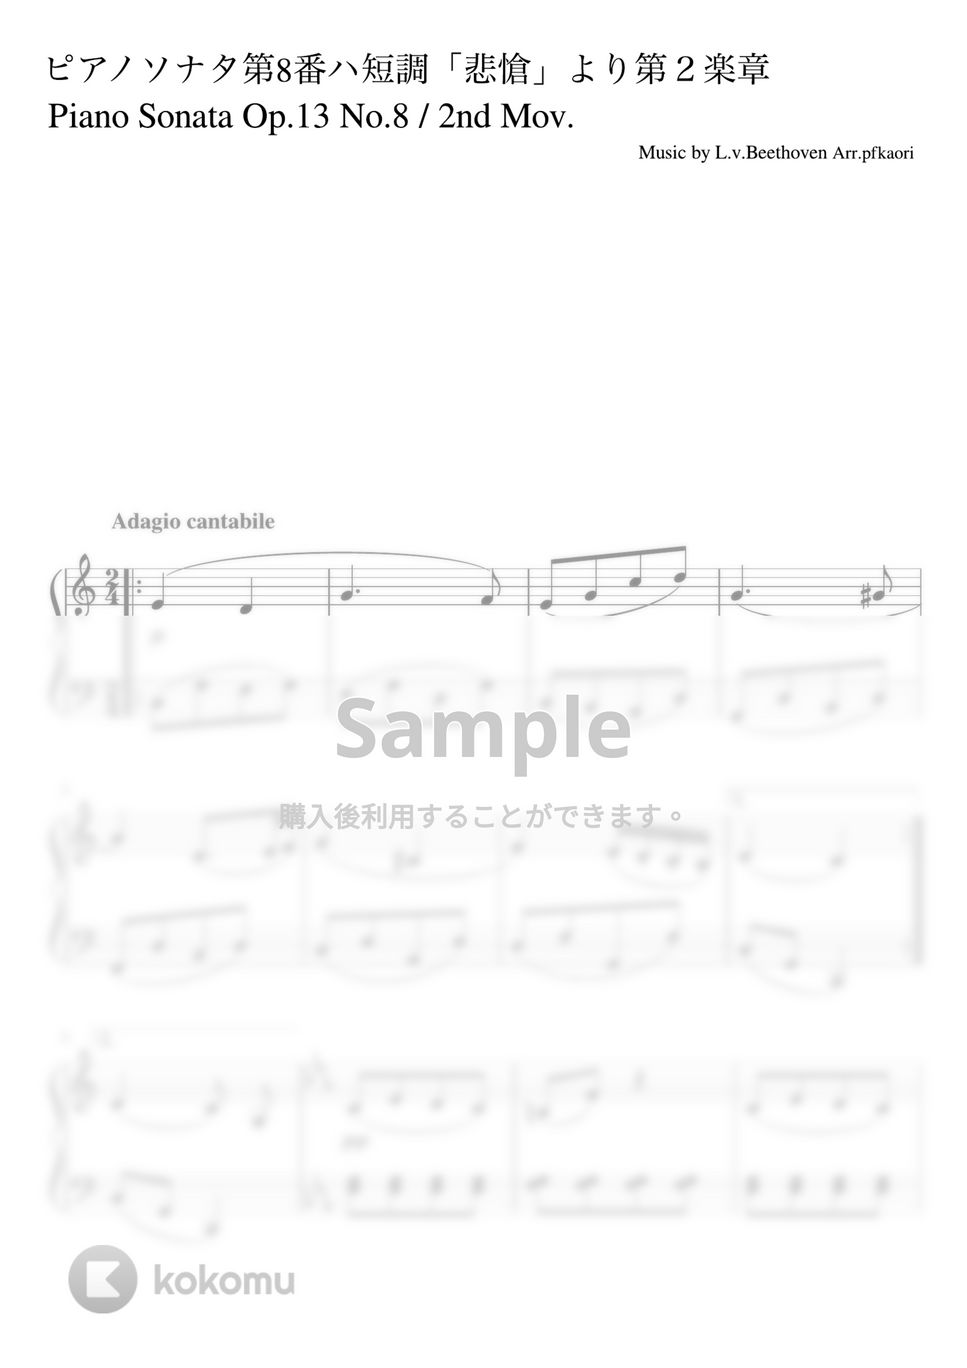 ベートーヴェン - ピアノソナタ第8番第2楽章「悲愴」 (C・ピアノソロ初〜中級) by pfkaori